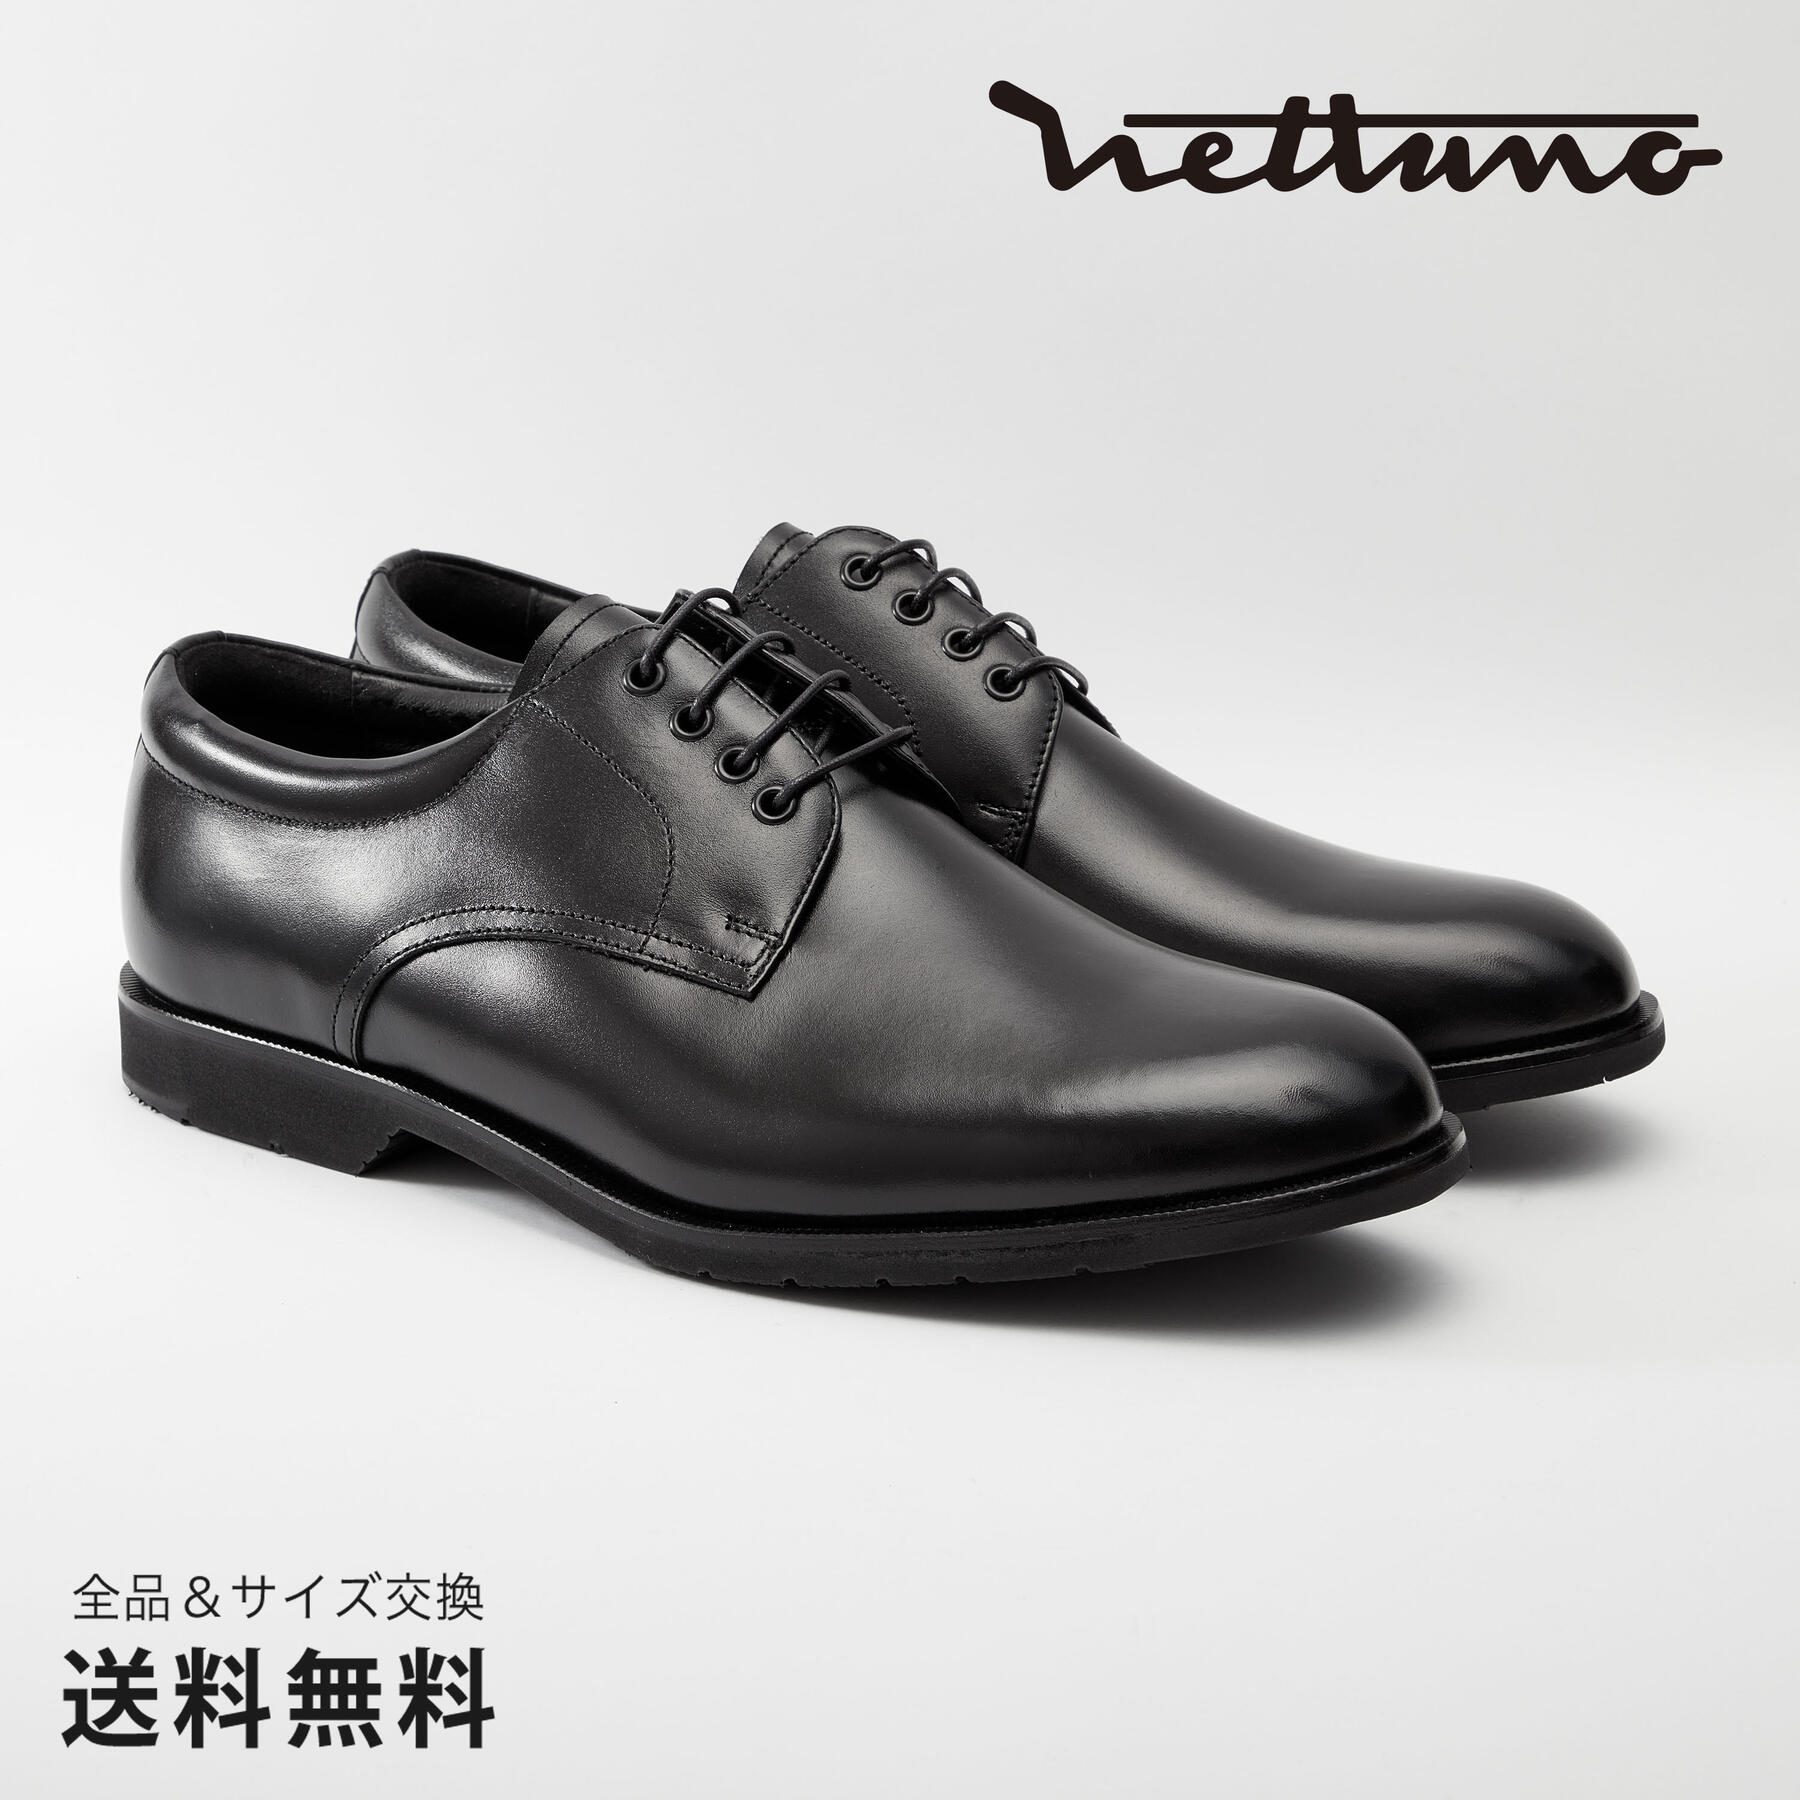 NETTUNO ネッツーノ 外羽根プレーントウ 4E 革靴 防水キップレザー ラバーソール ブラック セメンテッド 黒 BLACK 64139 日本 靴 メンズ靴 ビジネスシューズ サイズ 24.0 - 27.0cm 